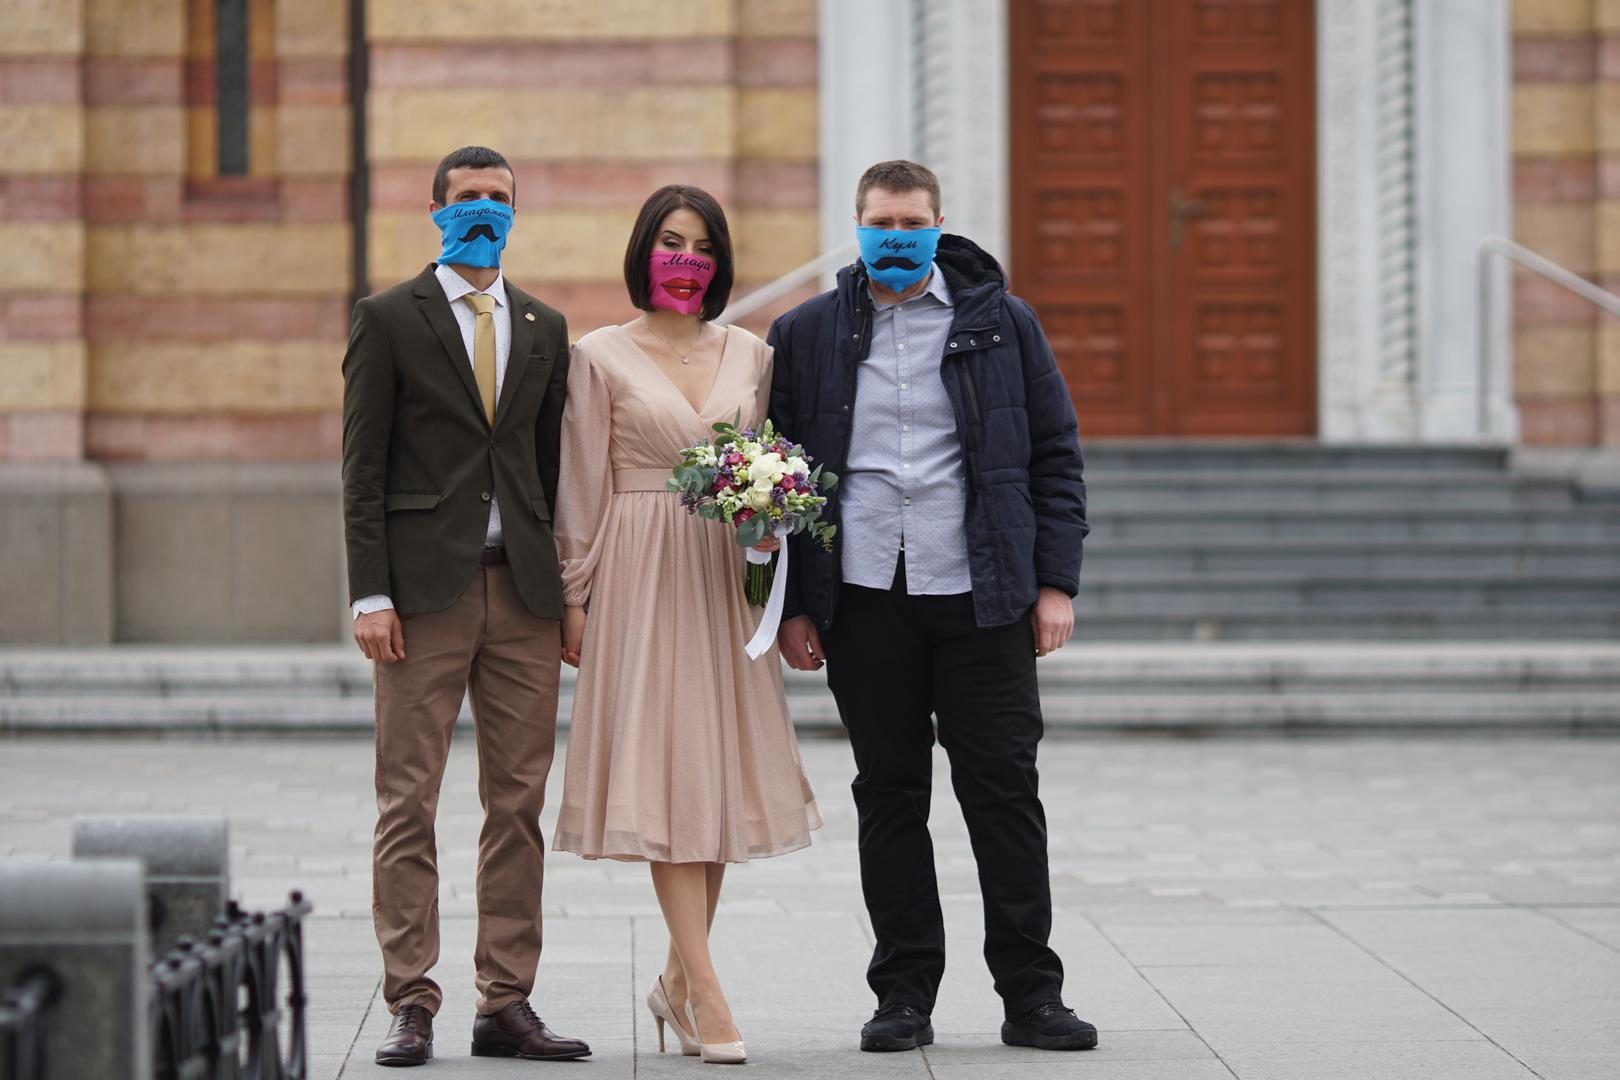 27.03.2020.,Banja Luka, BIH - Odrzano je jedino vjencanje koje nije otkazano u Banja Luci. Vjencanju je bio  prisutan minimalan broj ljudi, a uzvanici su nosili  posebne brendirane maske za lice. 
Photo: Dejan Rakita/PIXSELL